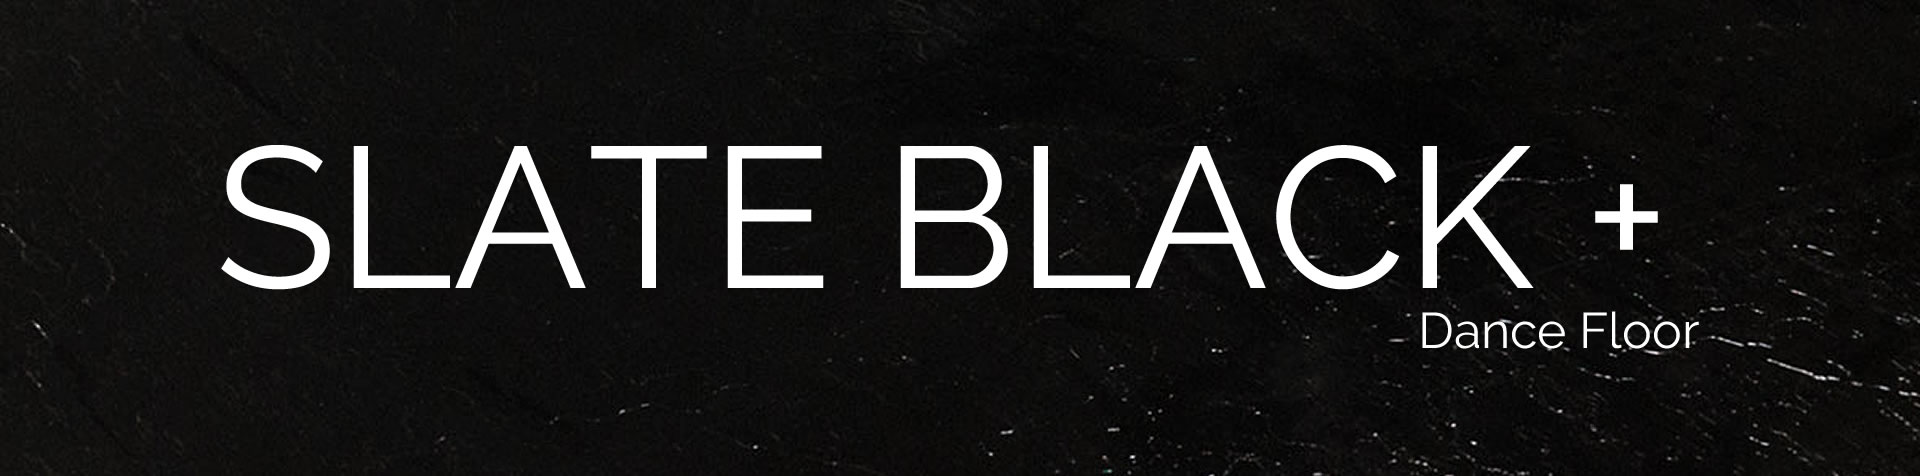 slate-black-slide-plus